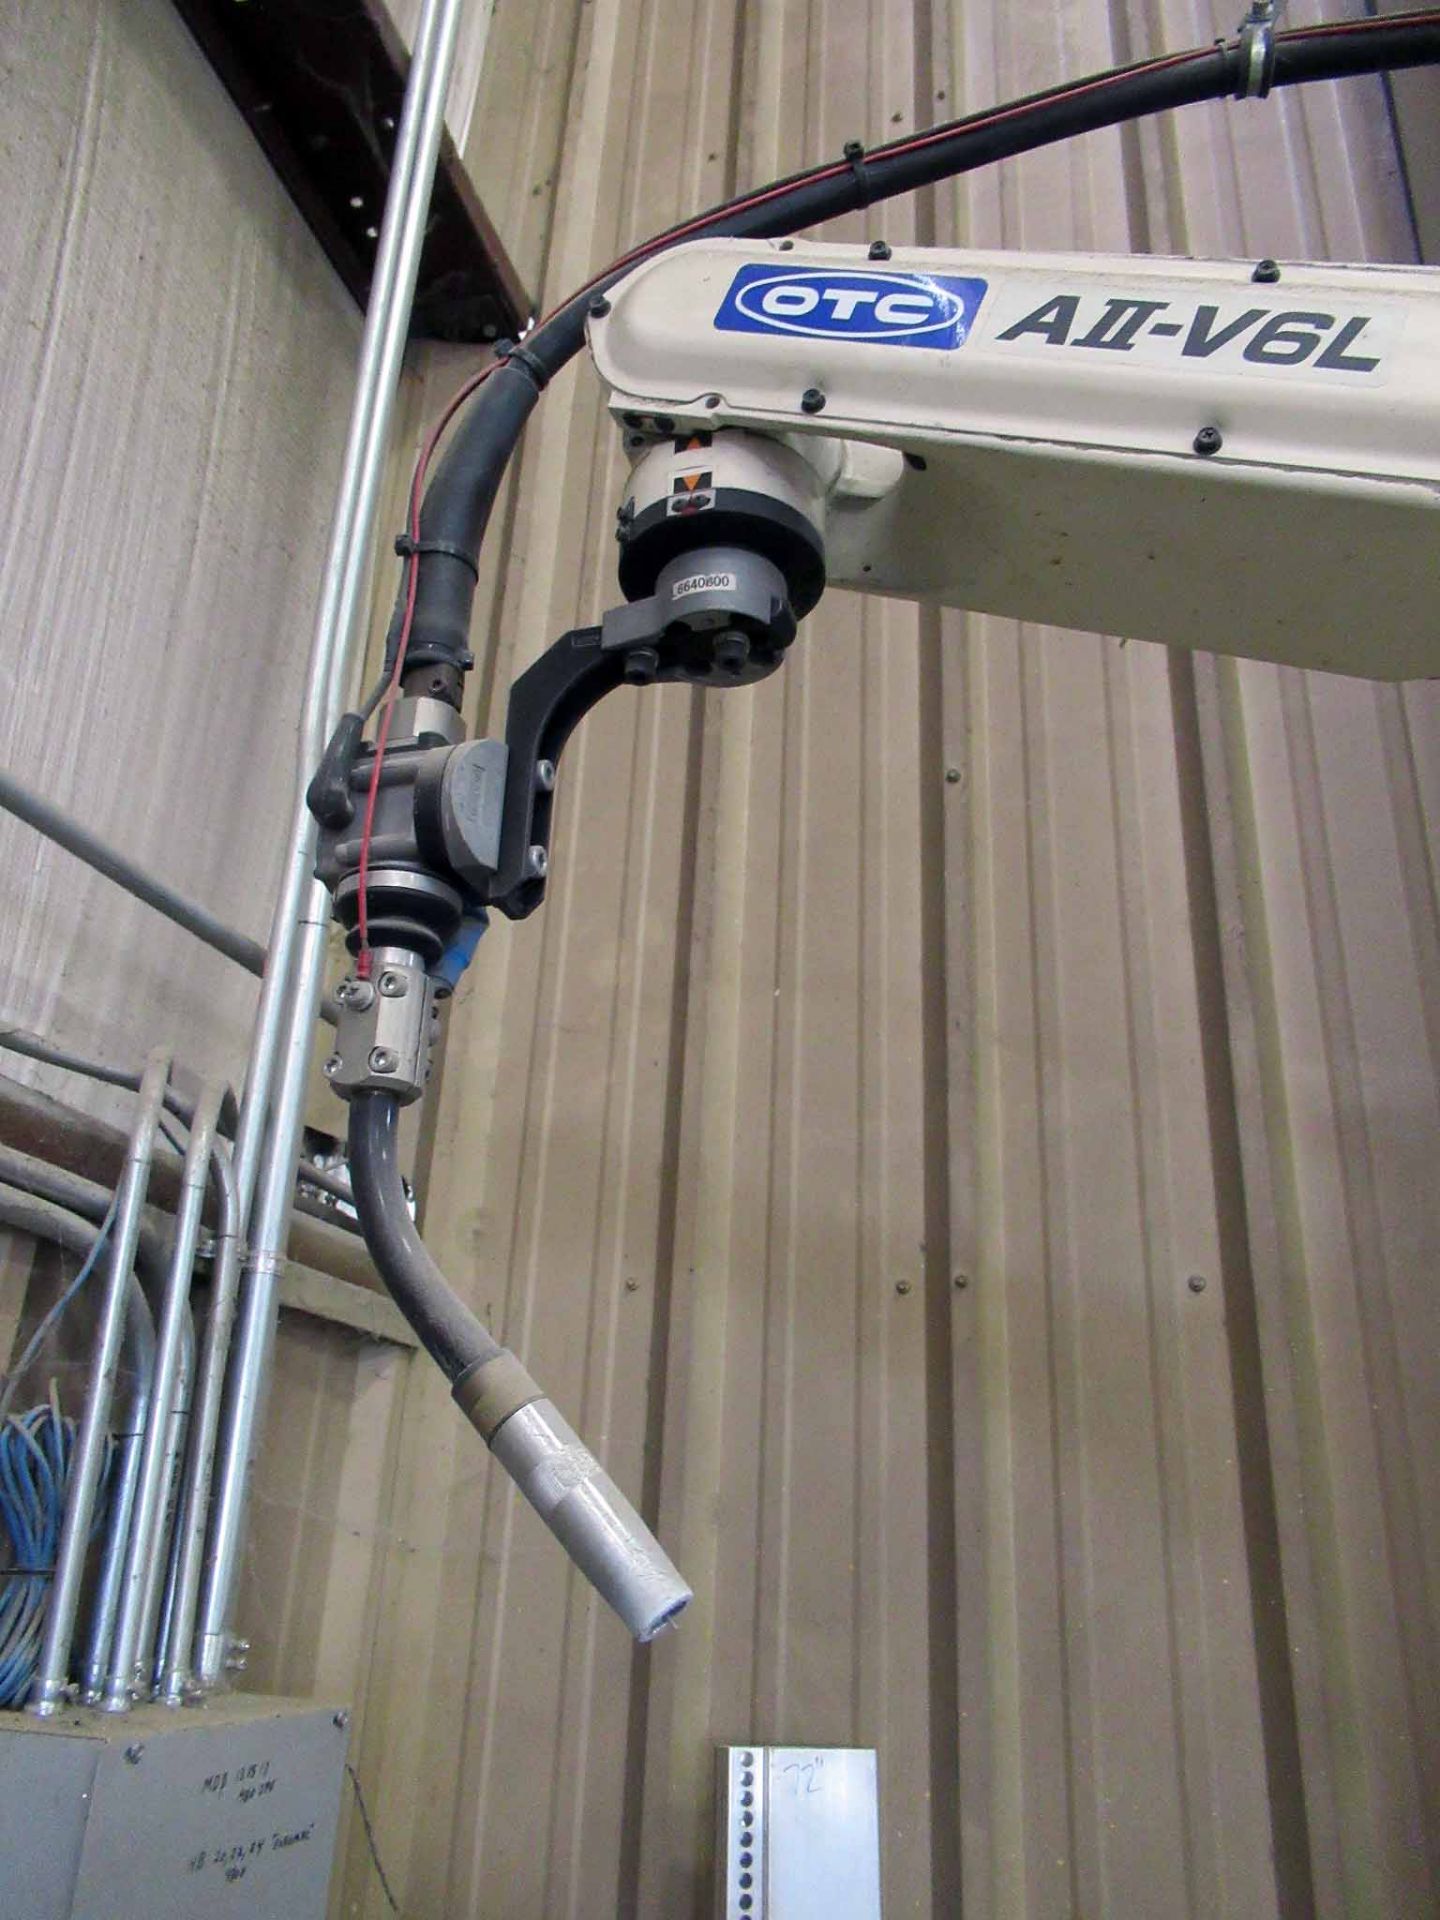 ROBOTIC WELDING SYSTEM, DAIHEN OTC MDL. AII-V6L, new 2009, mtd. on Mdl. NV6L robot manipulator, - Image 9 of 13